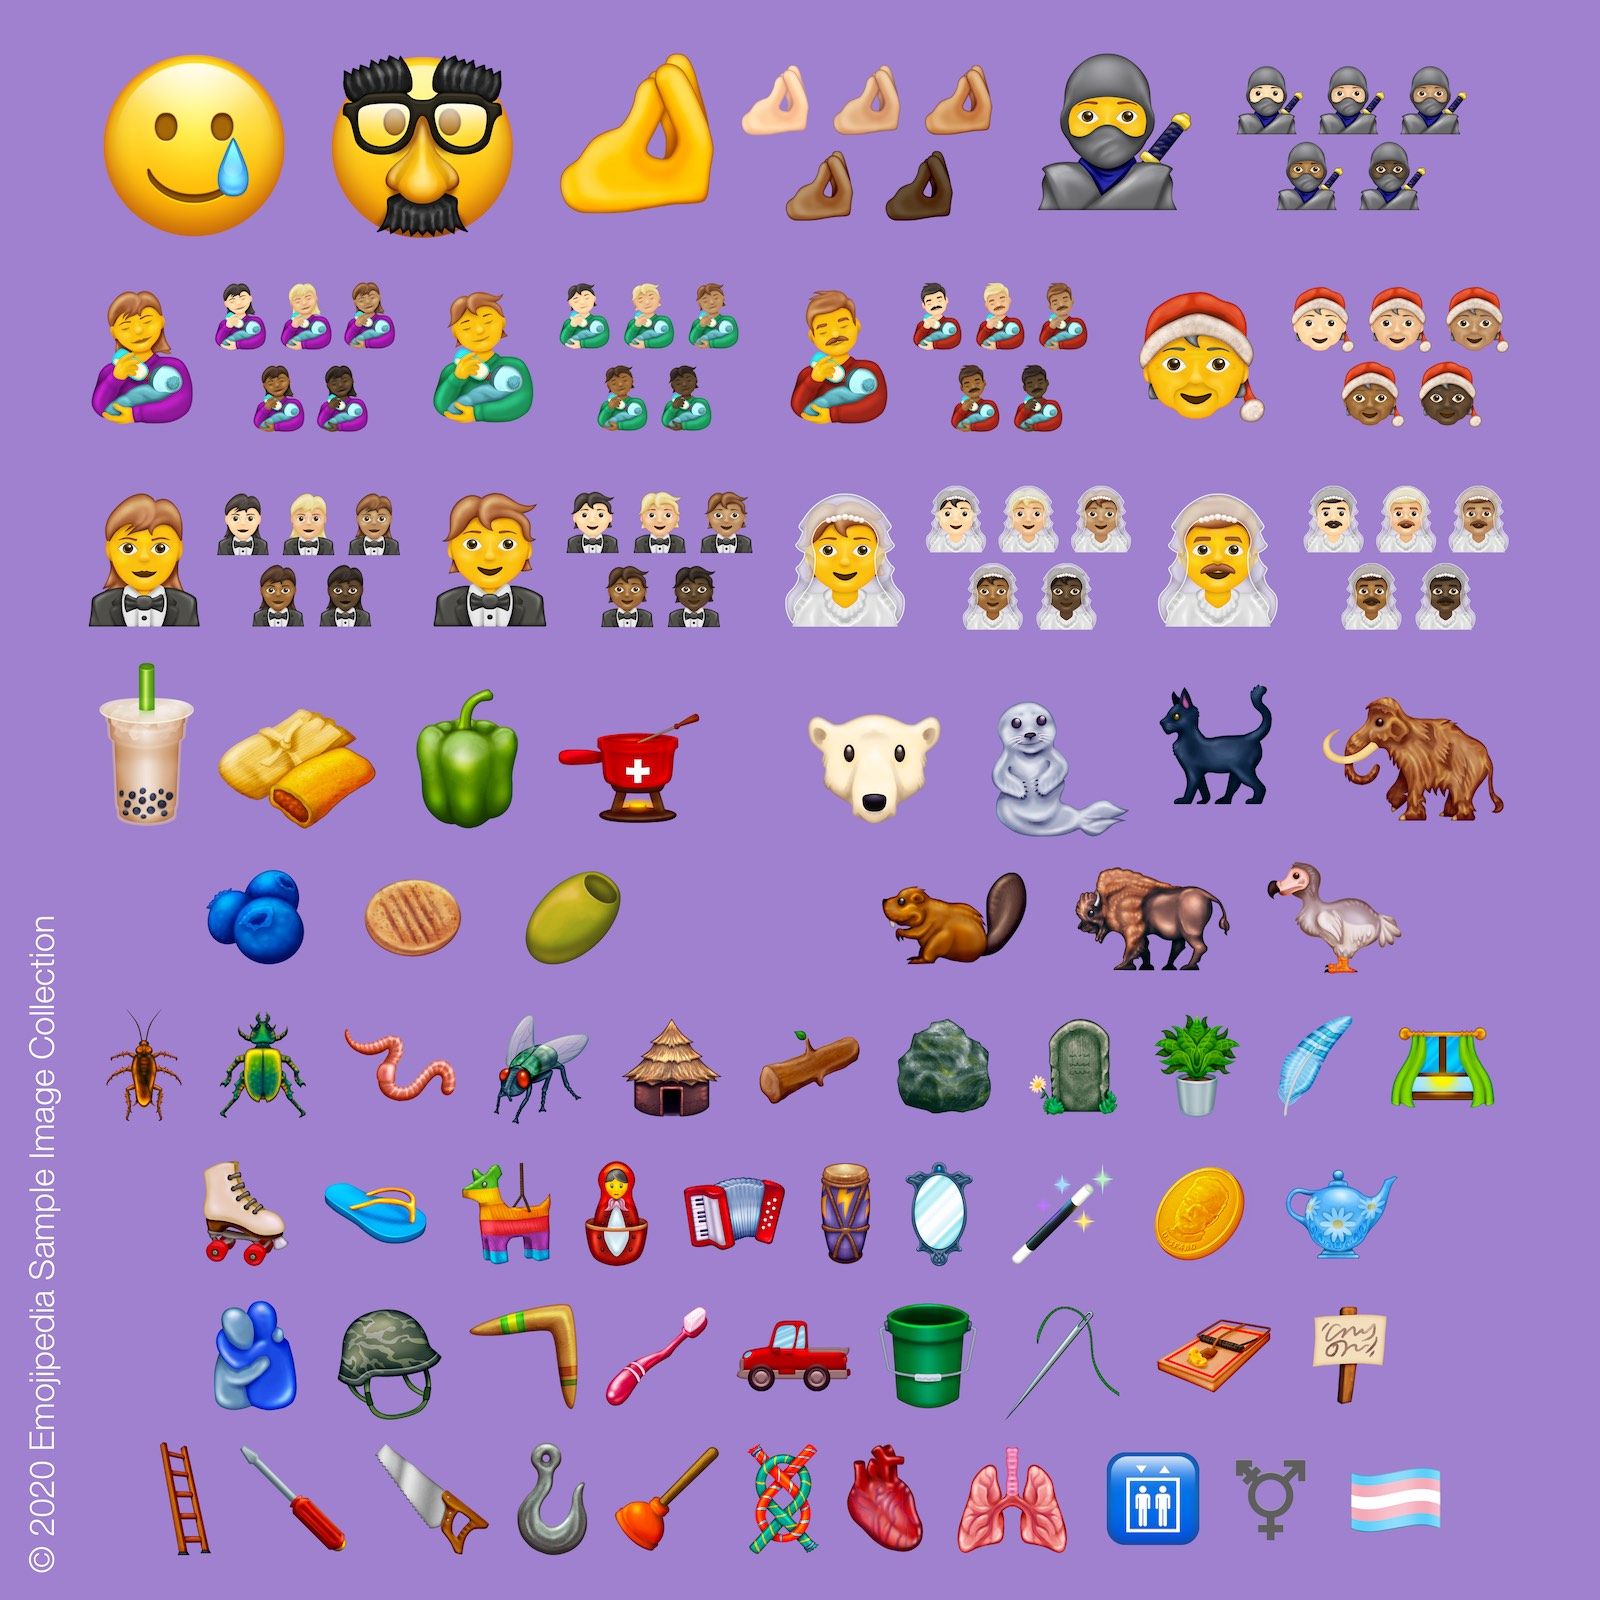 2020 yılı için 117 yeni emoji hazırlandı